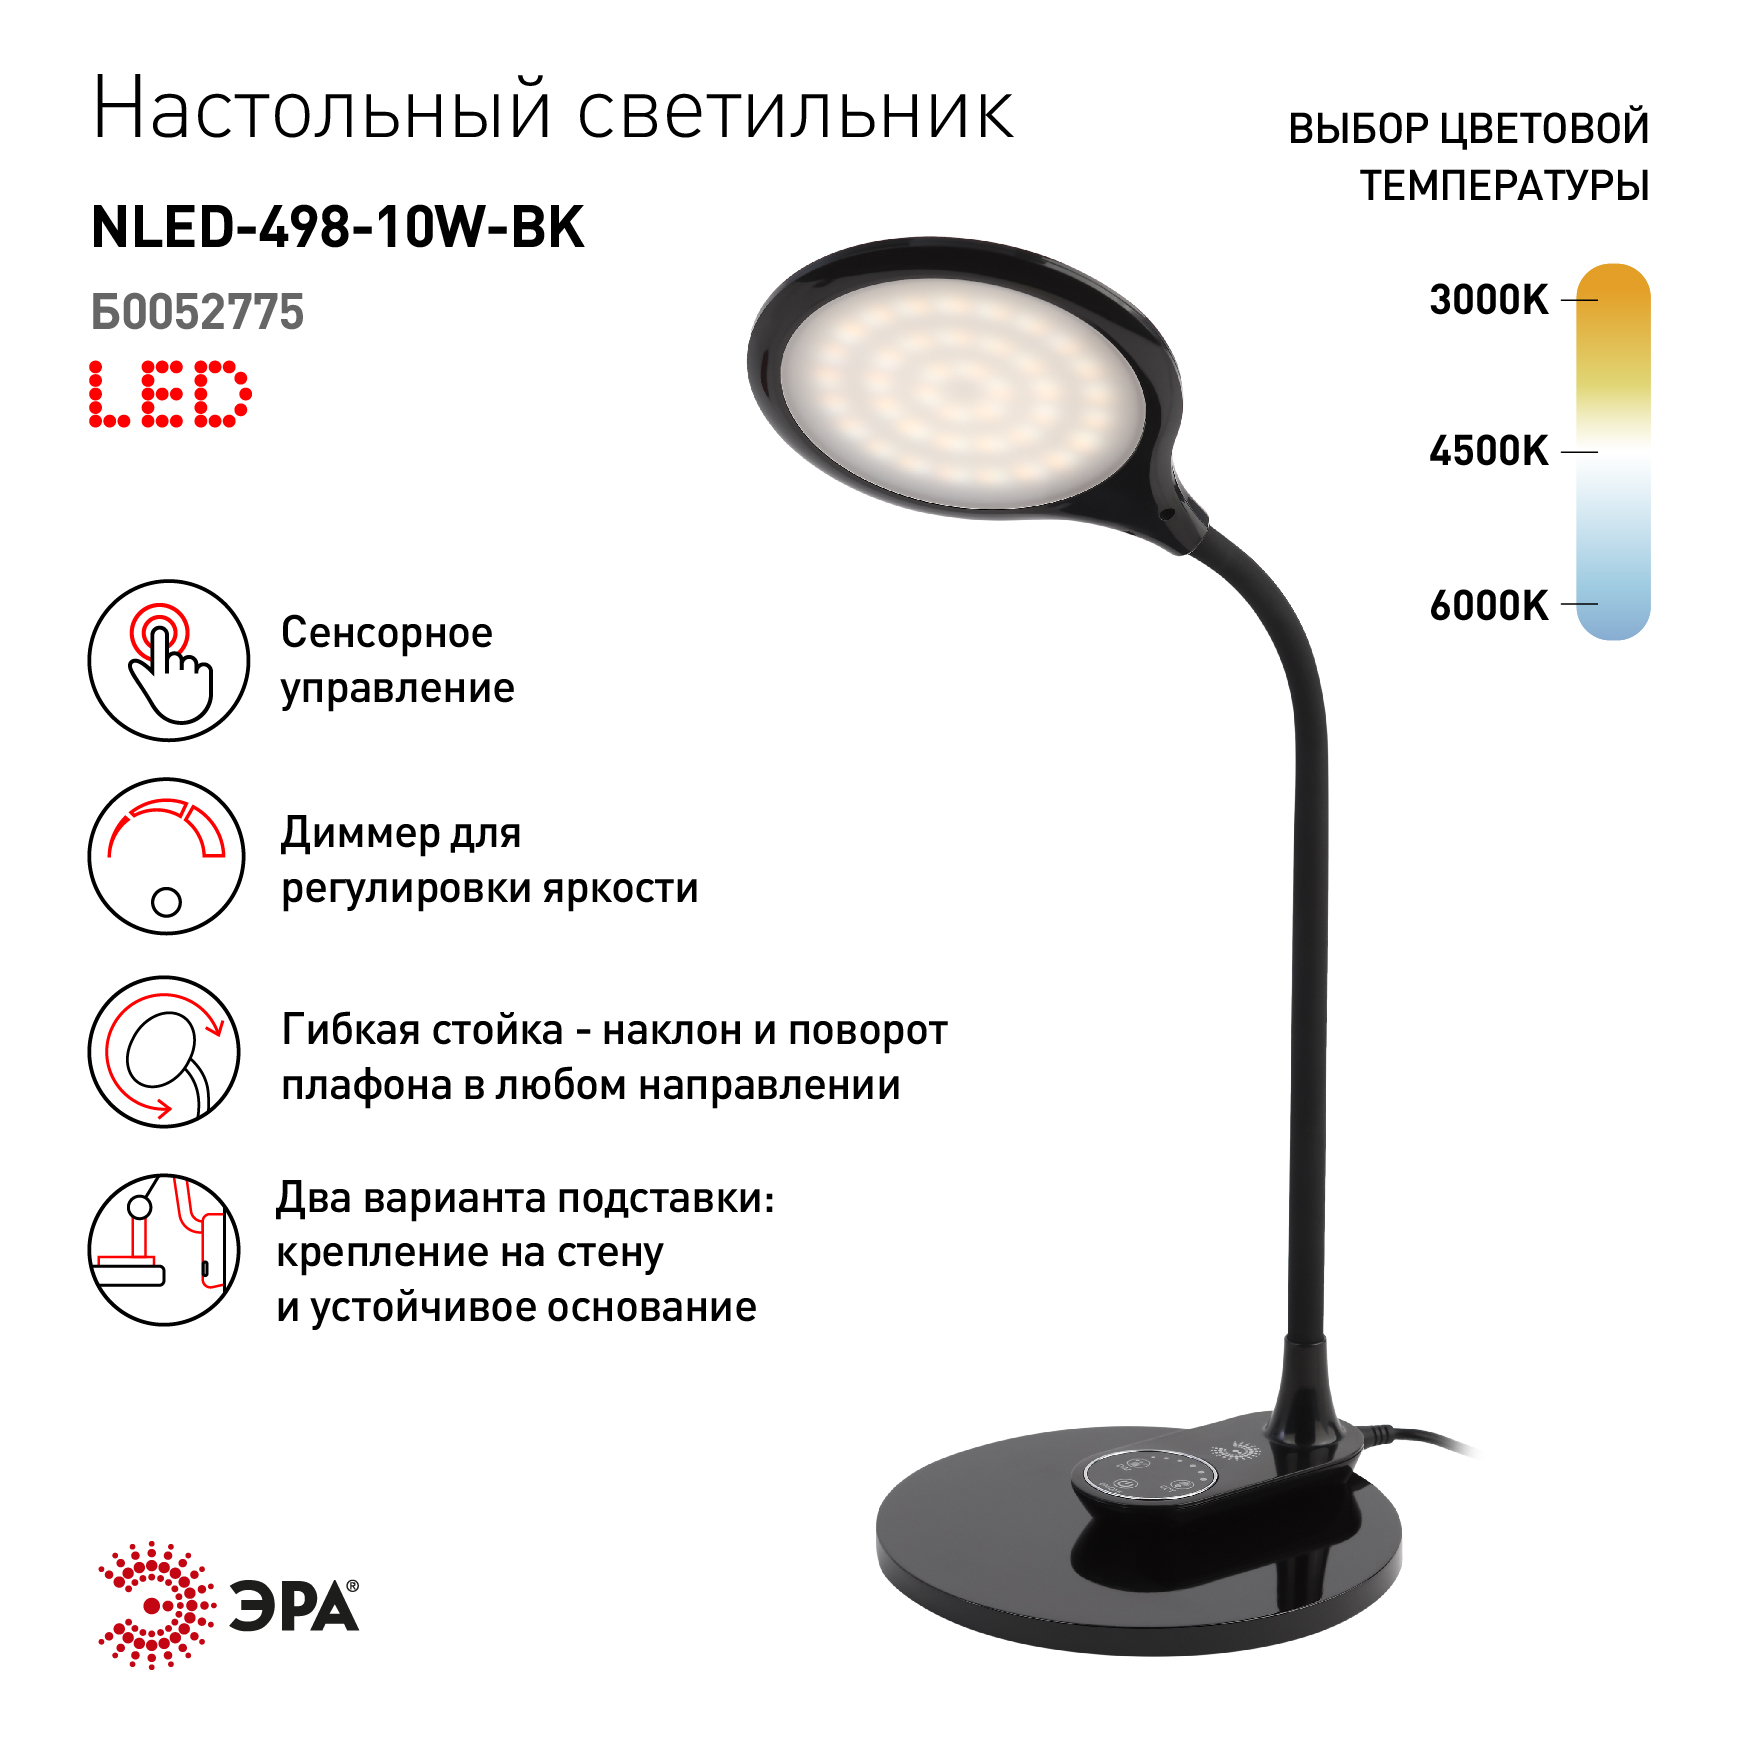  светильник ЭРА NLED-498-10W-BK светодиодный сo съемным .